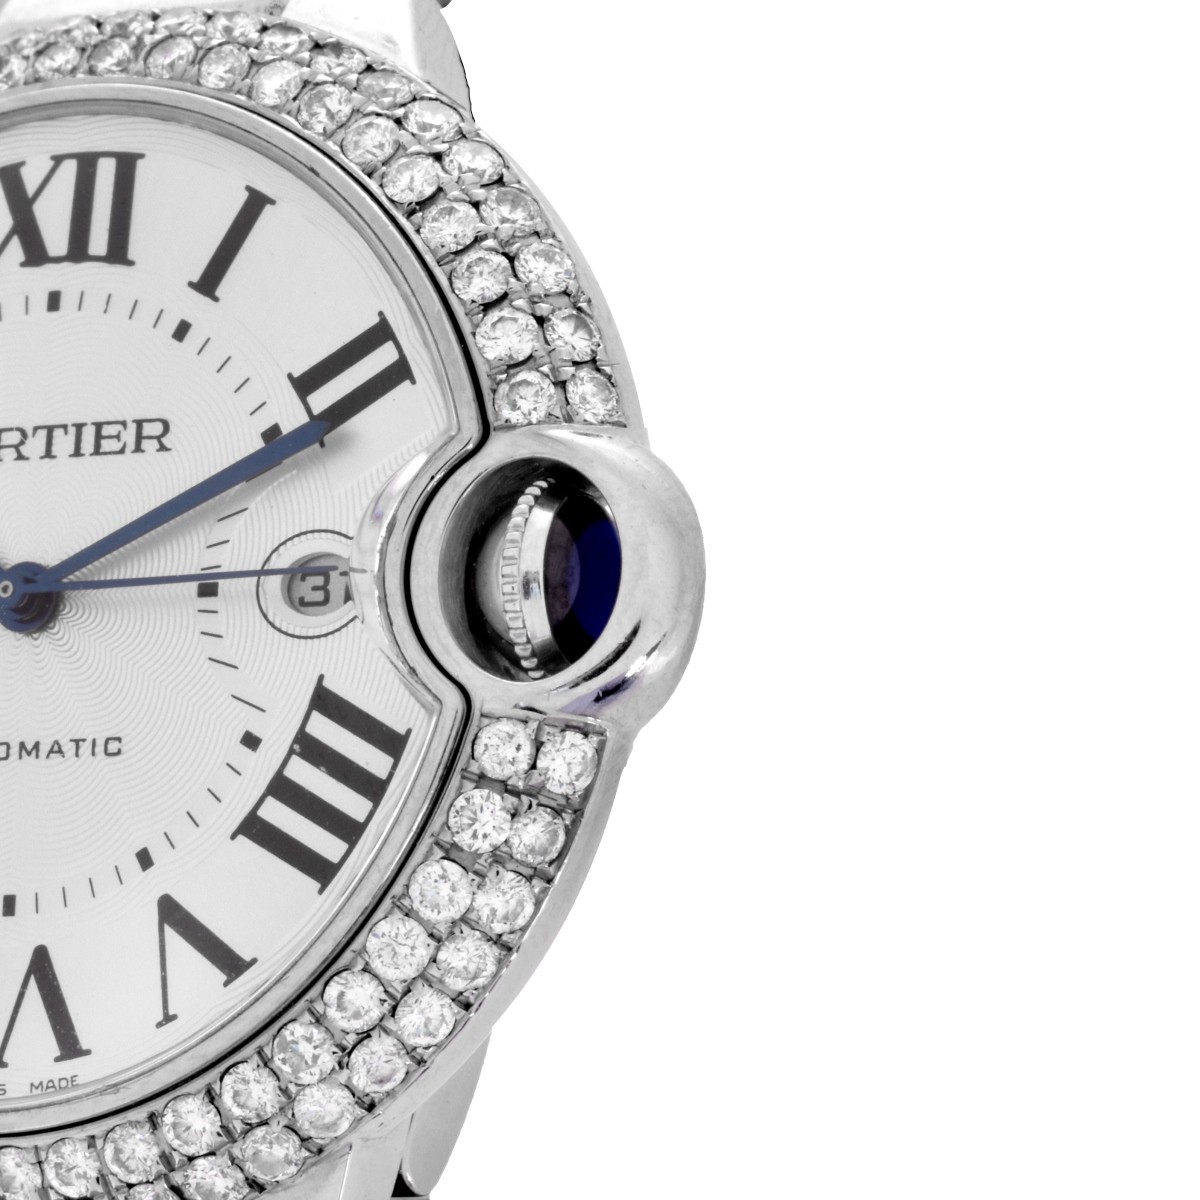 Cartier Ballon Bleu Watch